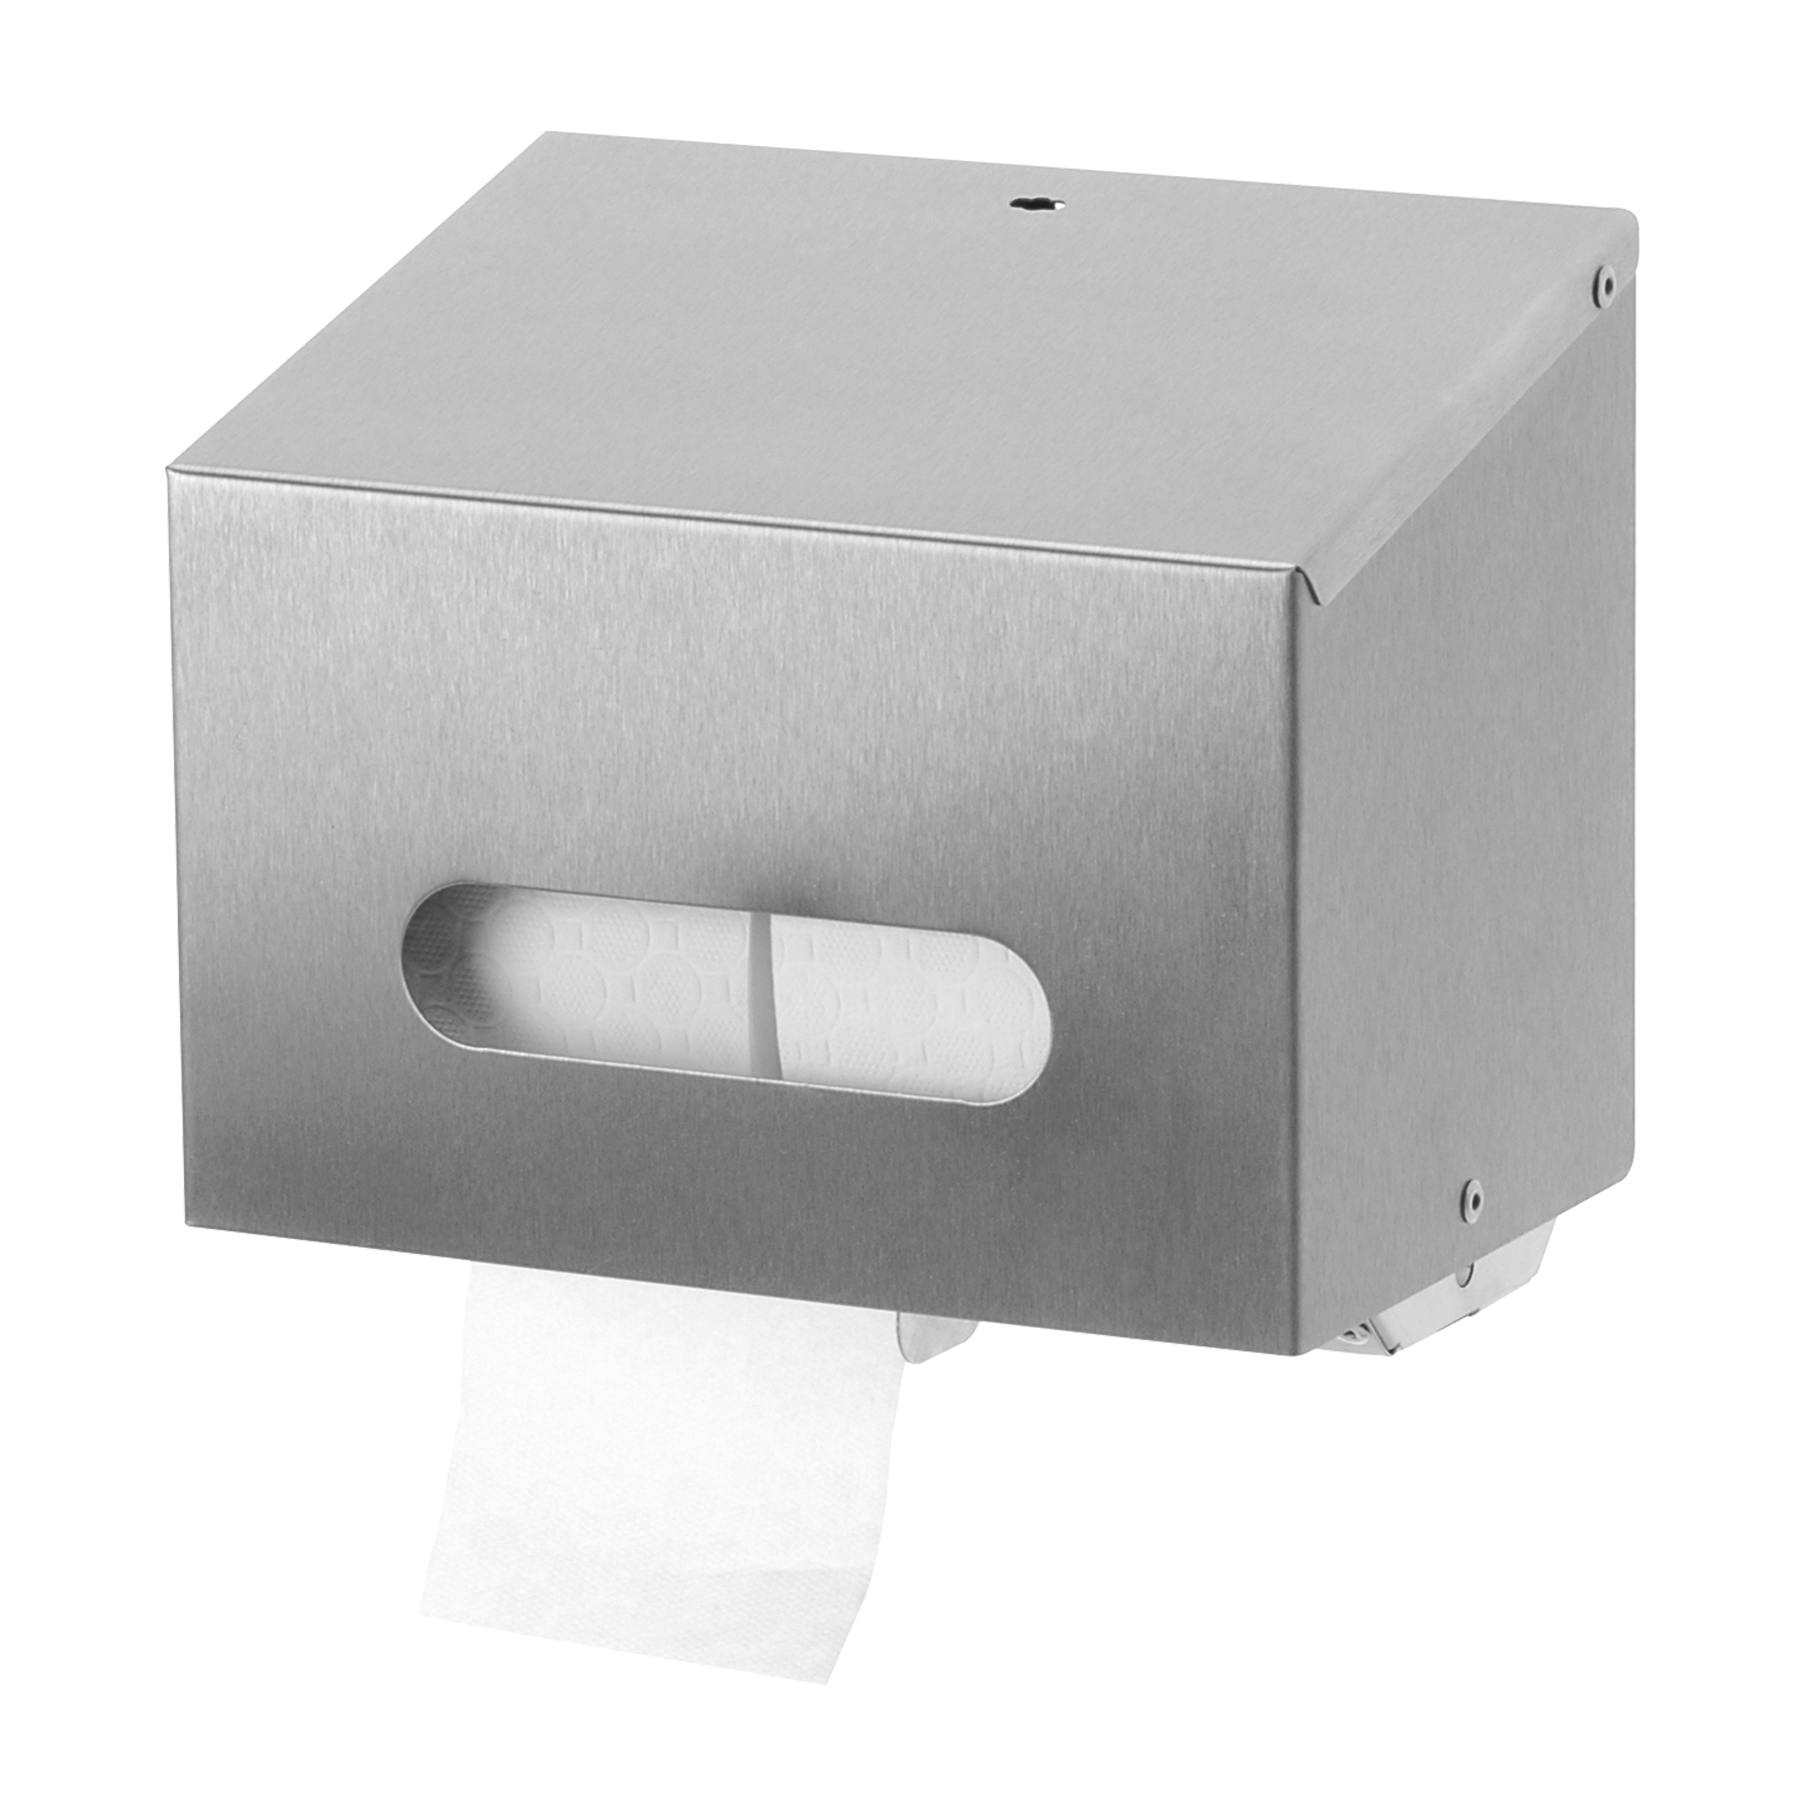 Sanfer S340022 toiletpapierdispenser voor 2 traditionele rollen, RVS type T 01 E